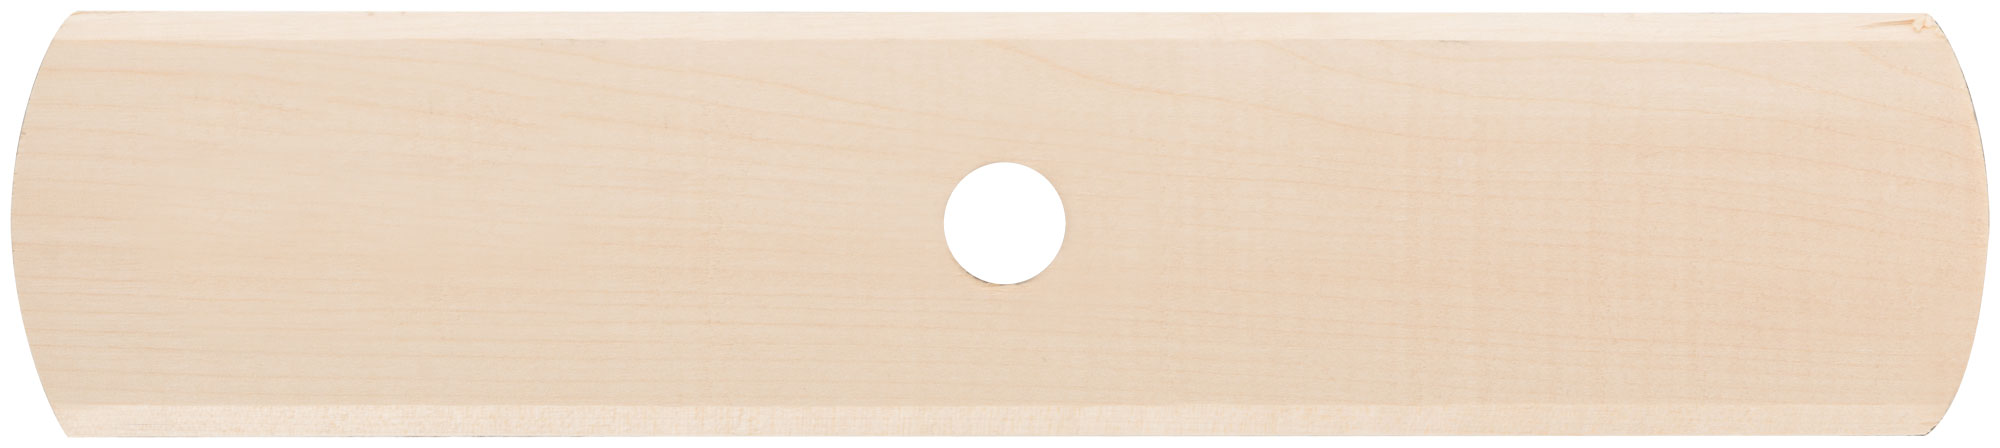 Щетка для пола деревянная овальная (тротуарная), 6-ти рядная, 275 мм